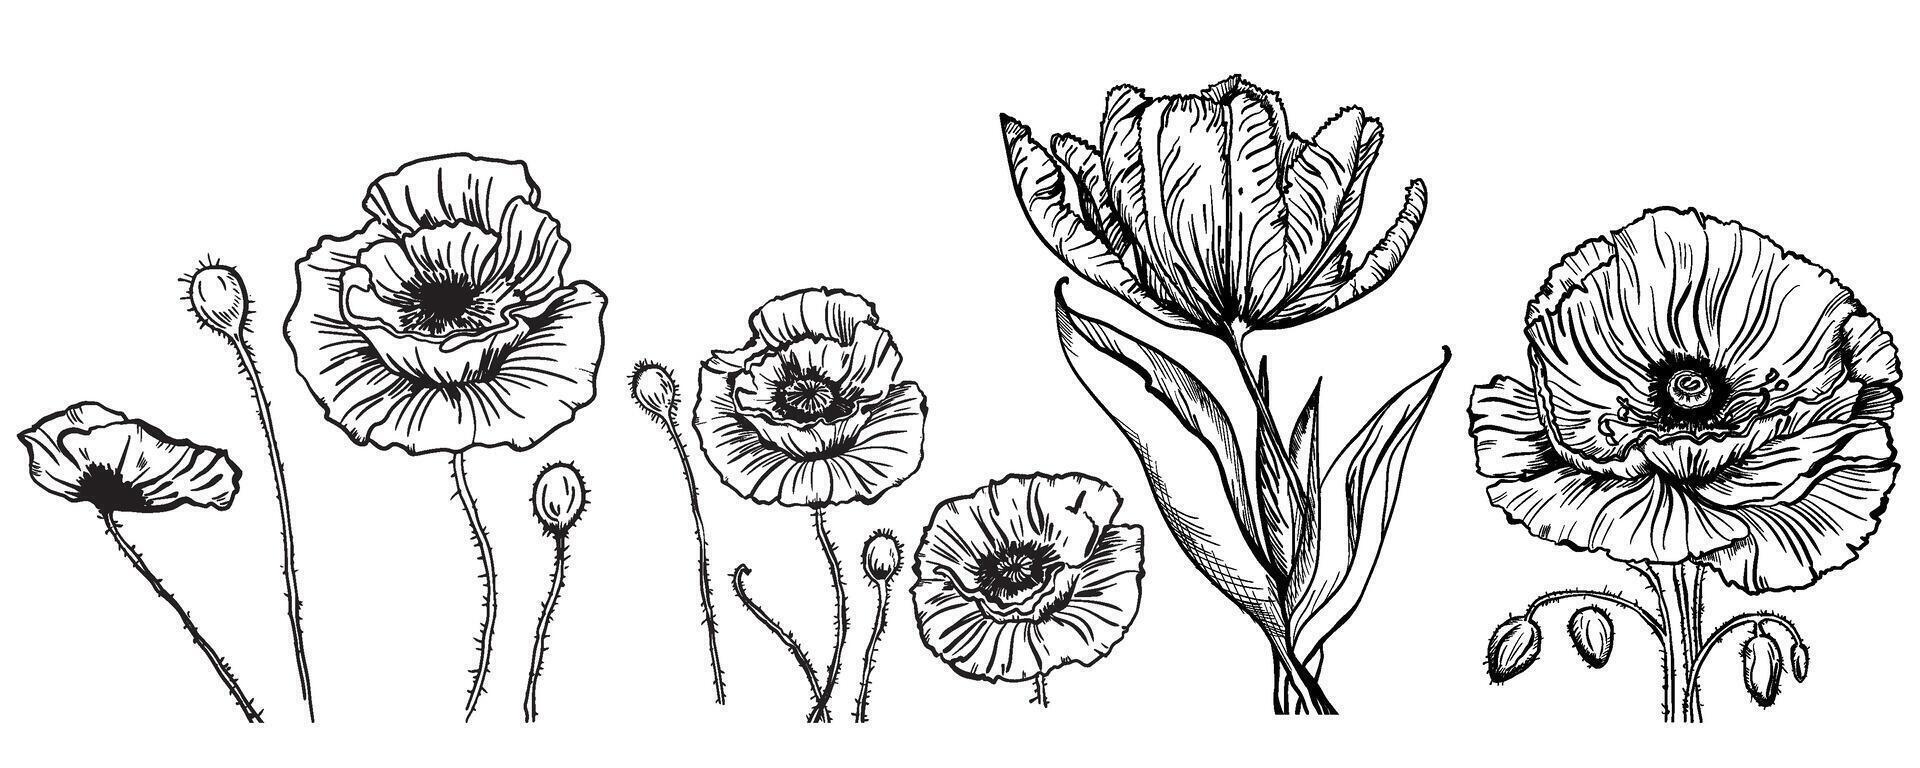 Vektor Zeichnung von Blumen und Blätter von Mohn und Tulpe, isoliert Blumen- Elemente mit ein schwarz Linie auf ein Weiß Hintergrund, handgemalt Illustration von ein Botaniker.